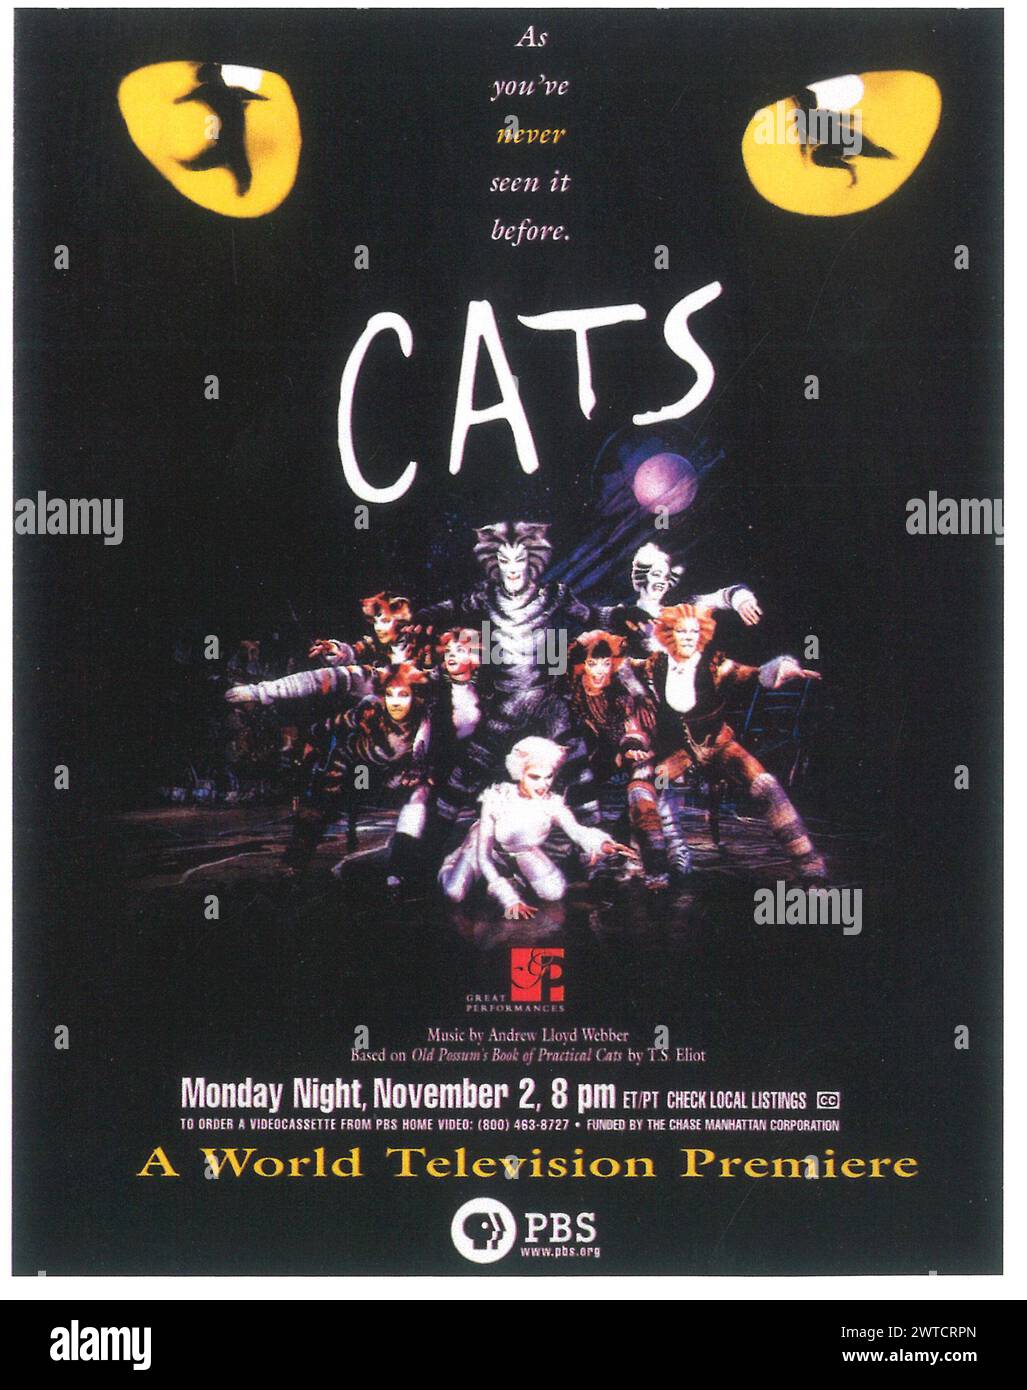 1998 Andrew Lloyd Webber – Cats musical PBS affiche pour la première fois à la télévision mondiale Banque D'Images